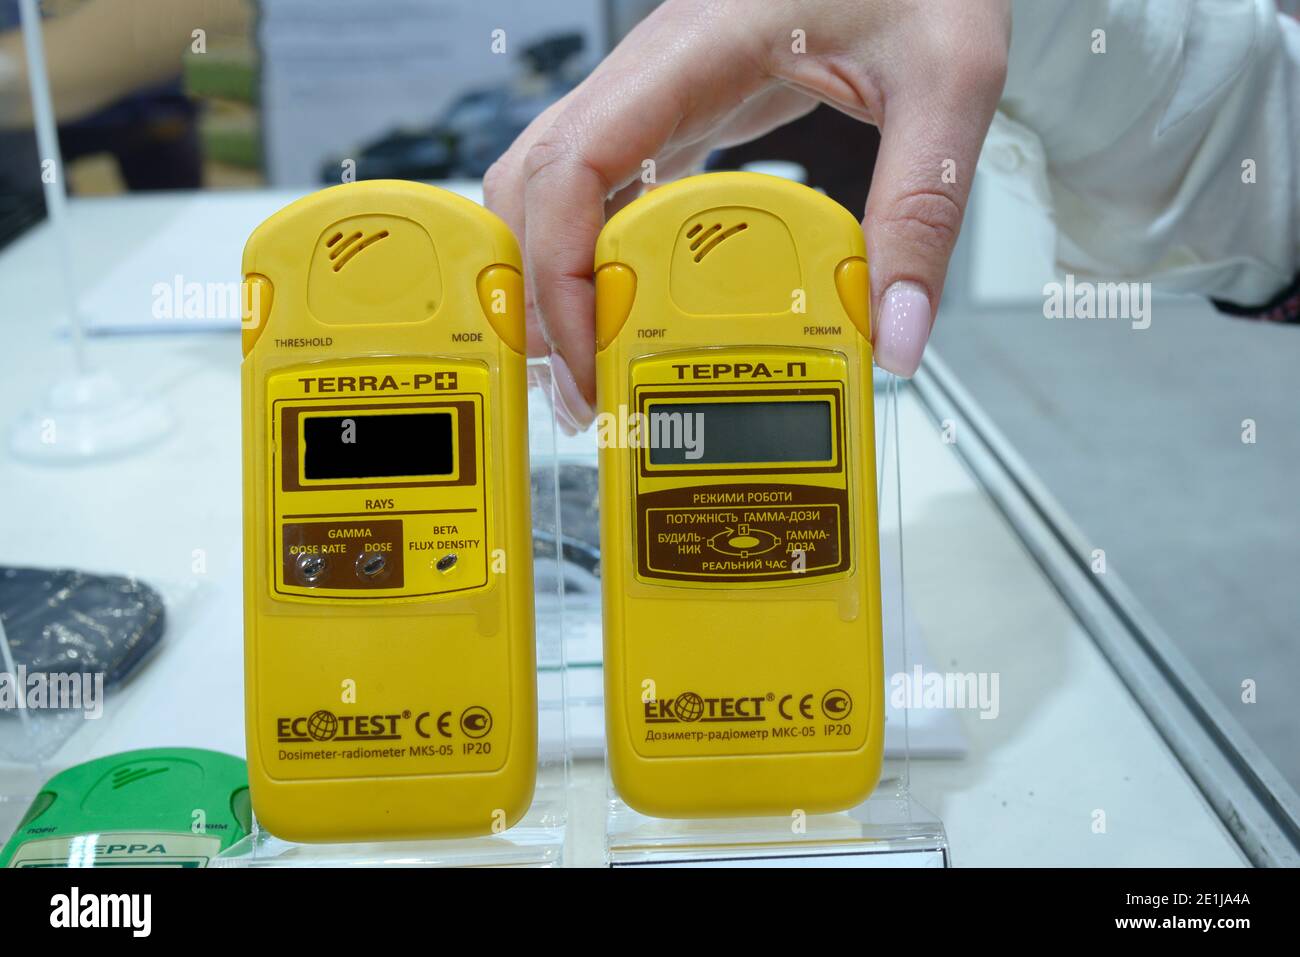 Le mani della donna tengono il dosimetro-radiometri personale per misurare i livelli di radiazione. 8 ottobre 2019. Kiev, Ucraina Foto Stock